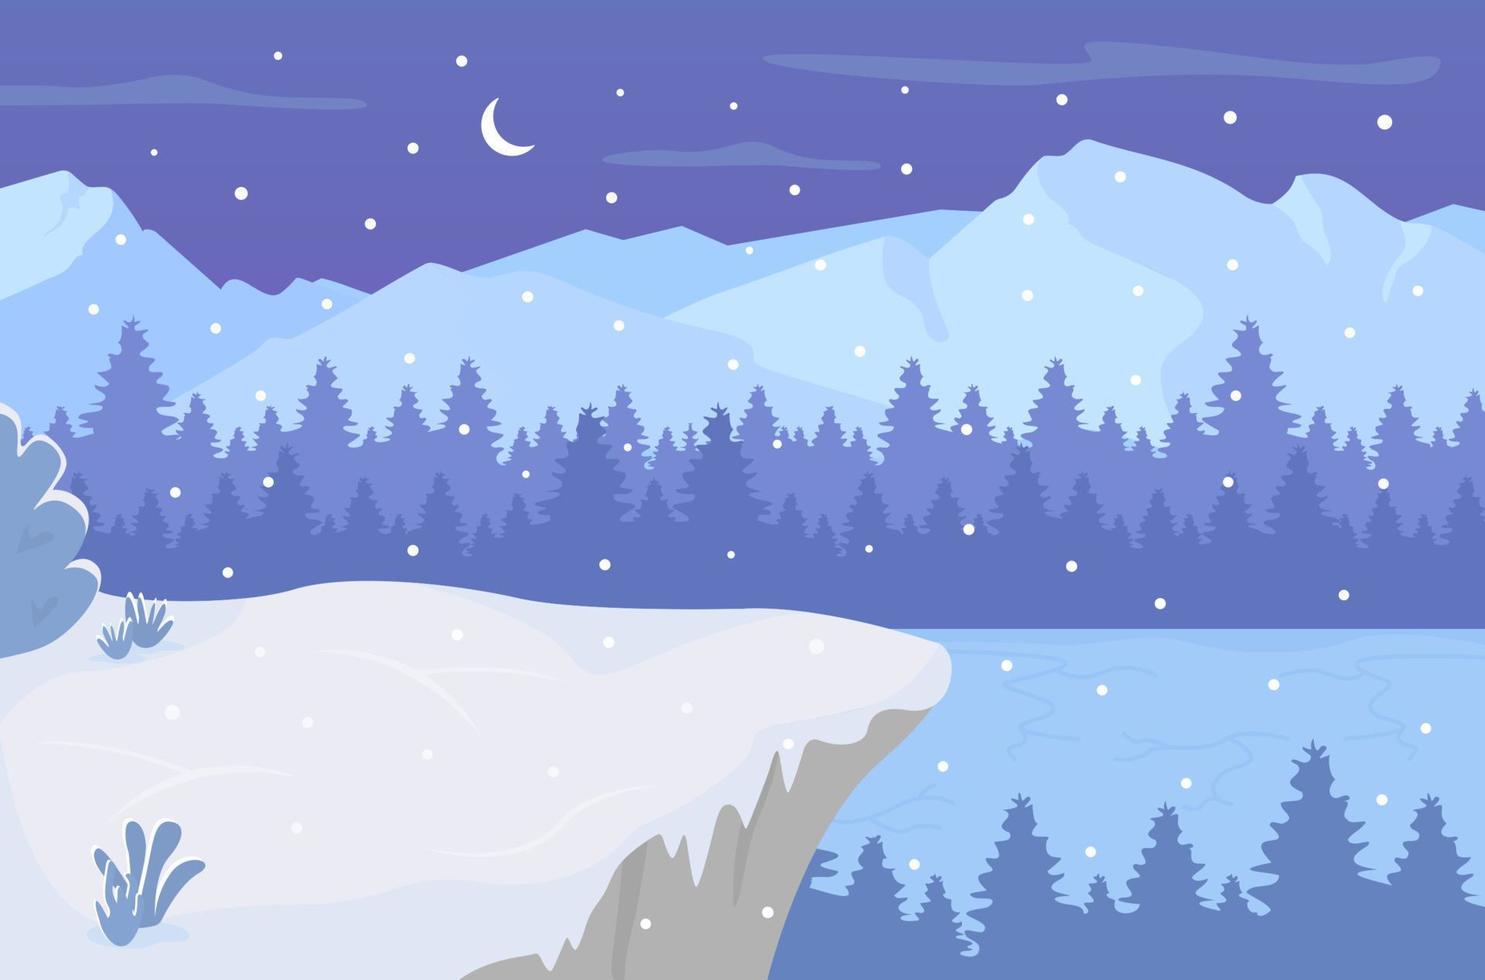 noche en la ilustración de vector de color plano lago congelado. copos de nieve cayendo sobre colinas en el bosque. invierno nevado paisaje de dibujos animados en 2d con cielo nocturno con luna creciente en el fondo